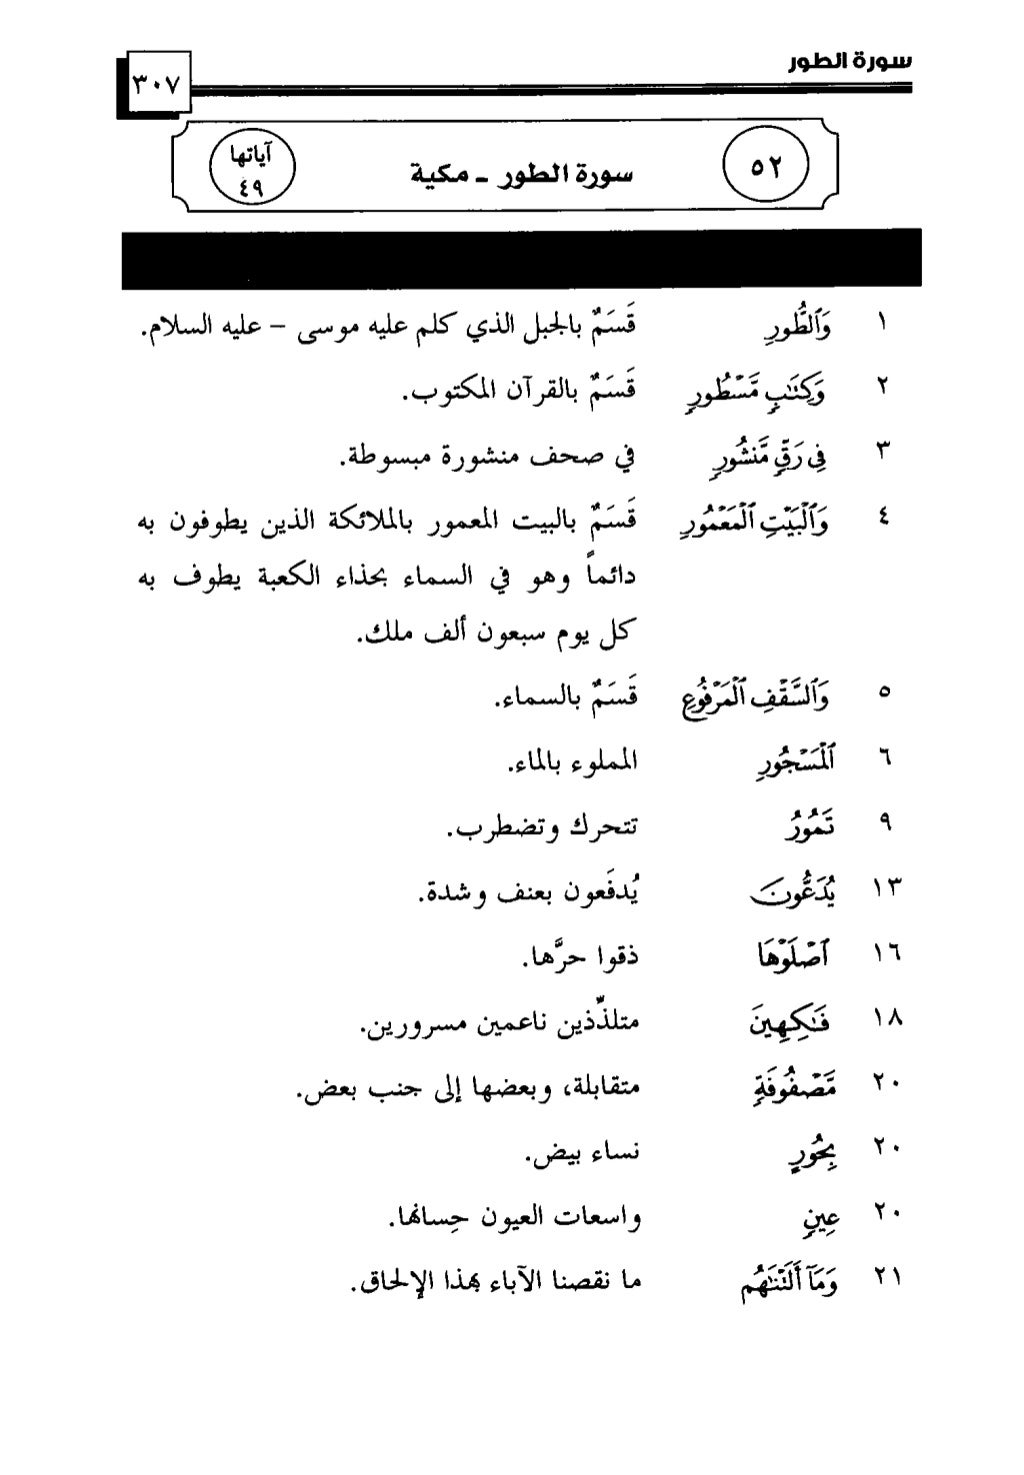 خريطة مفاهيم الطرائق العلمية باللغة العربية